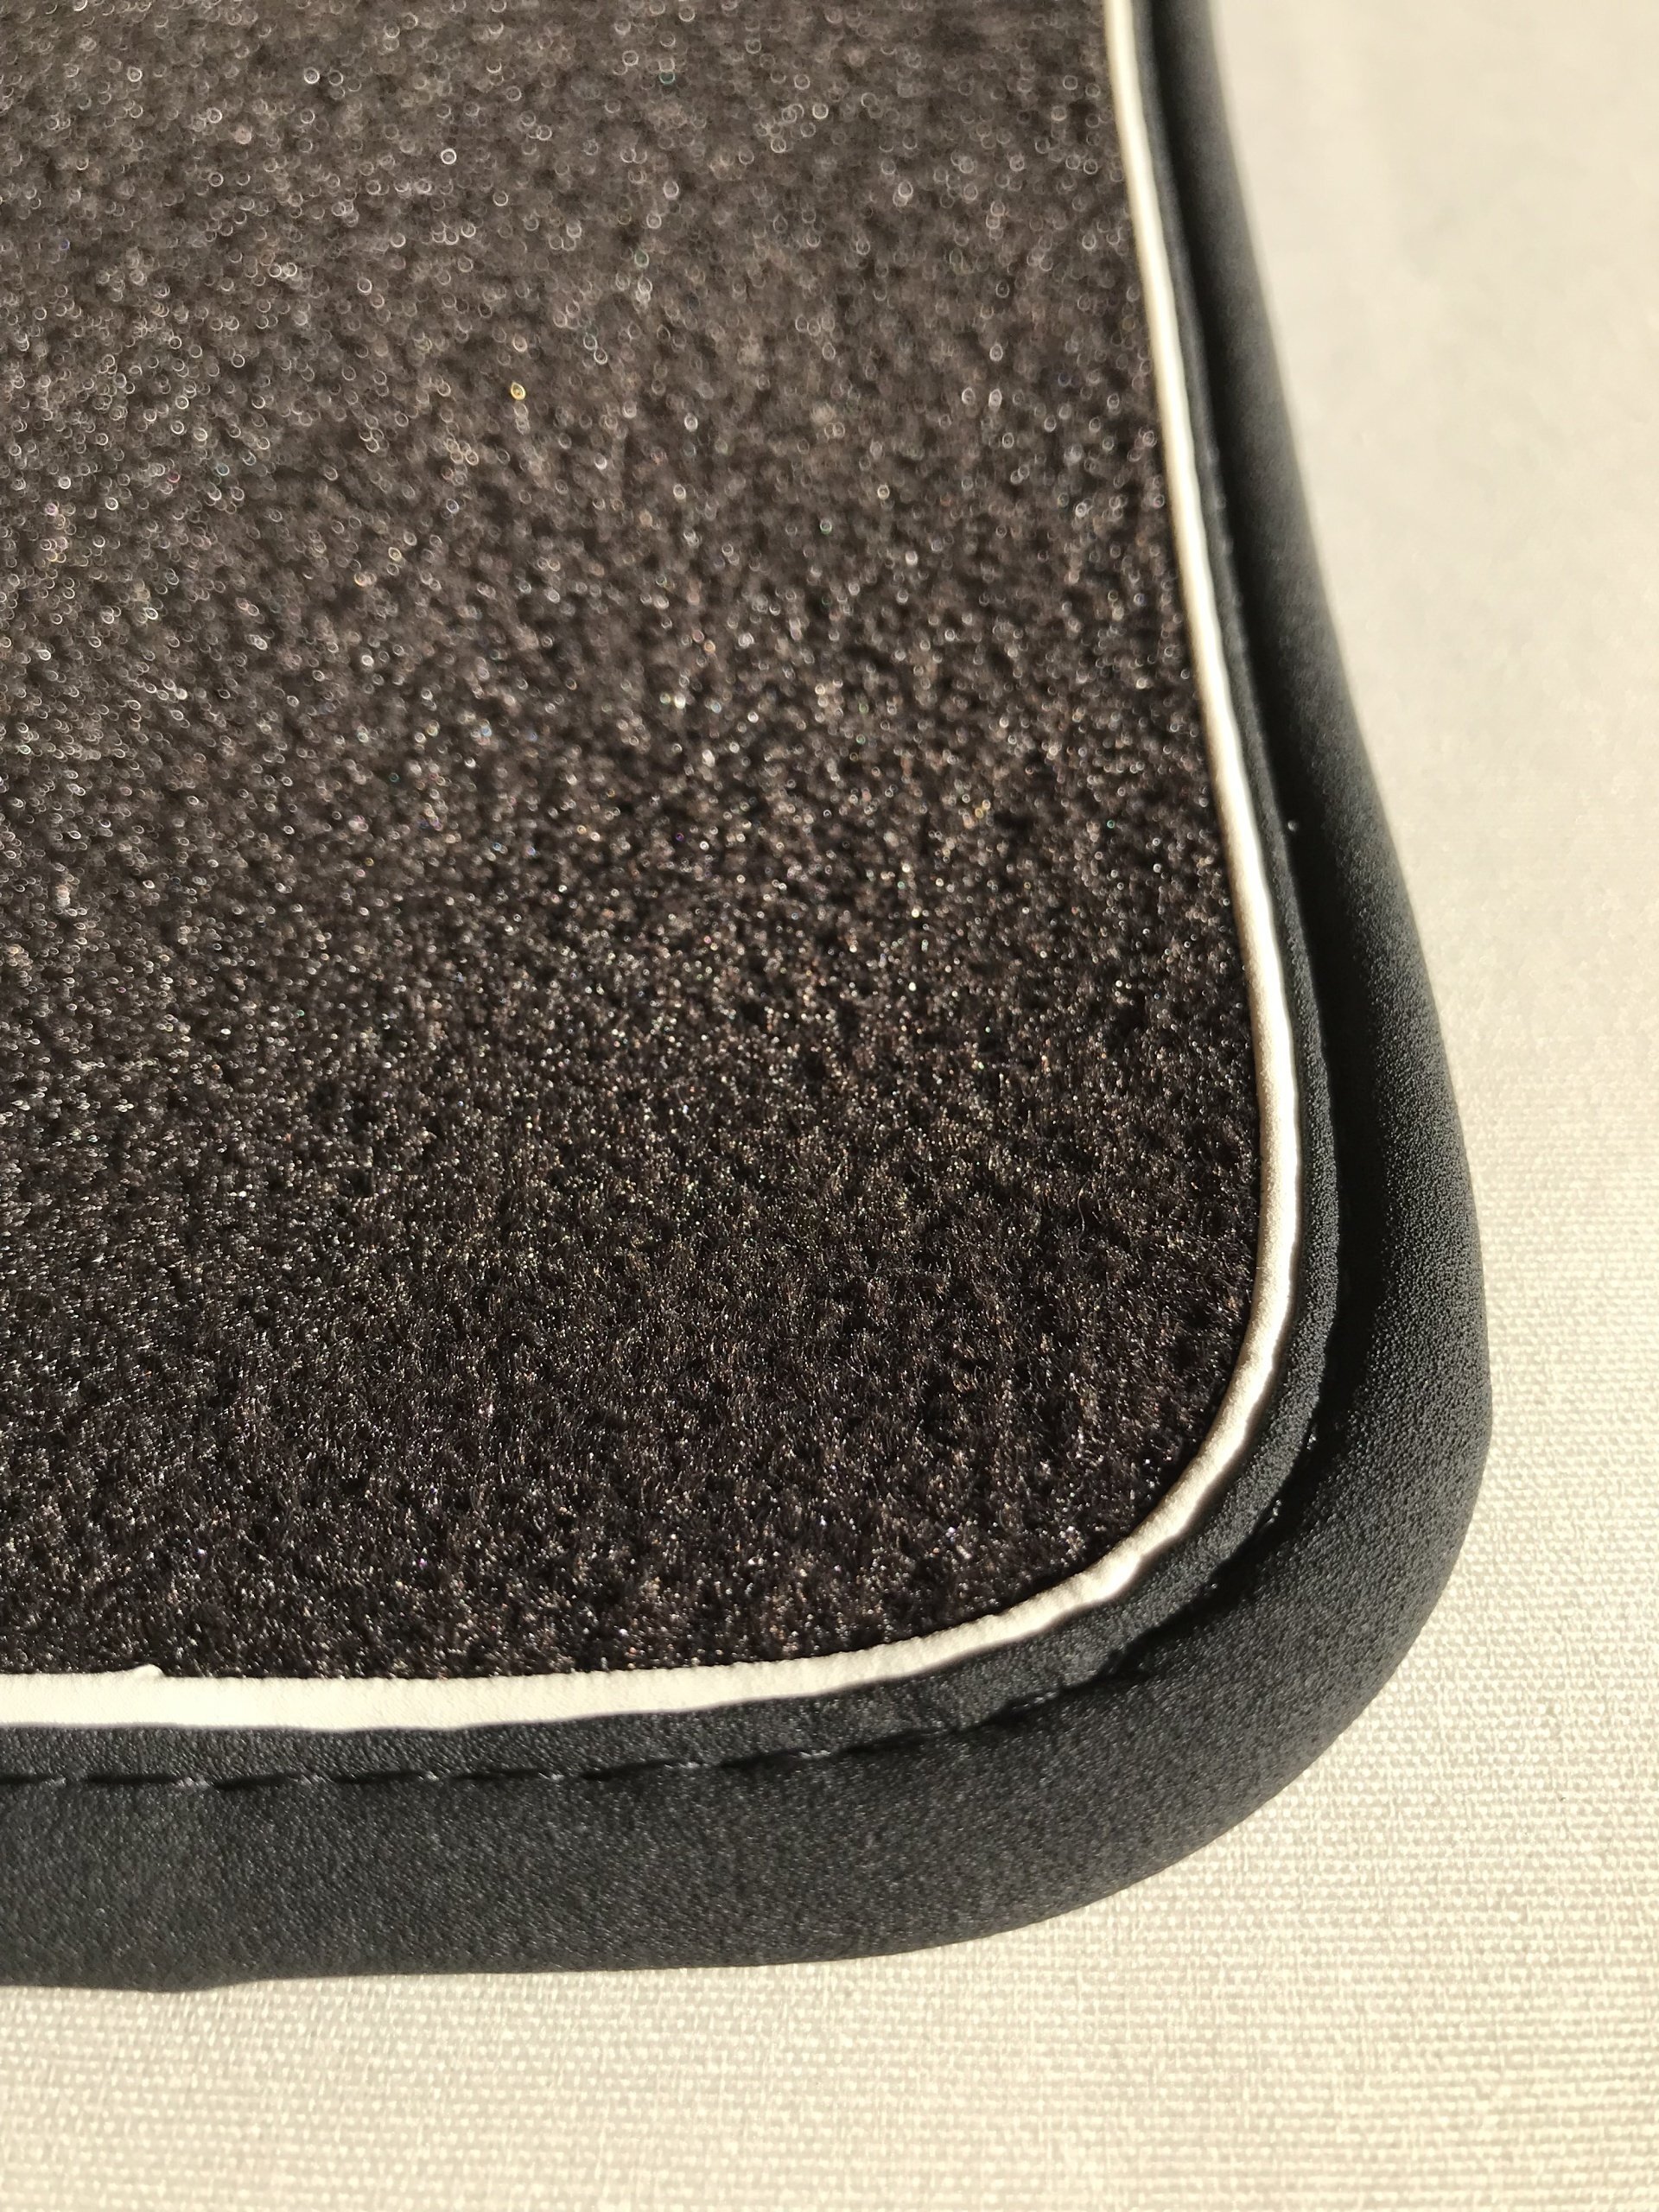 Premium Velours-Fußmatten vorne, Vignale-Design, Metal Grey